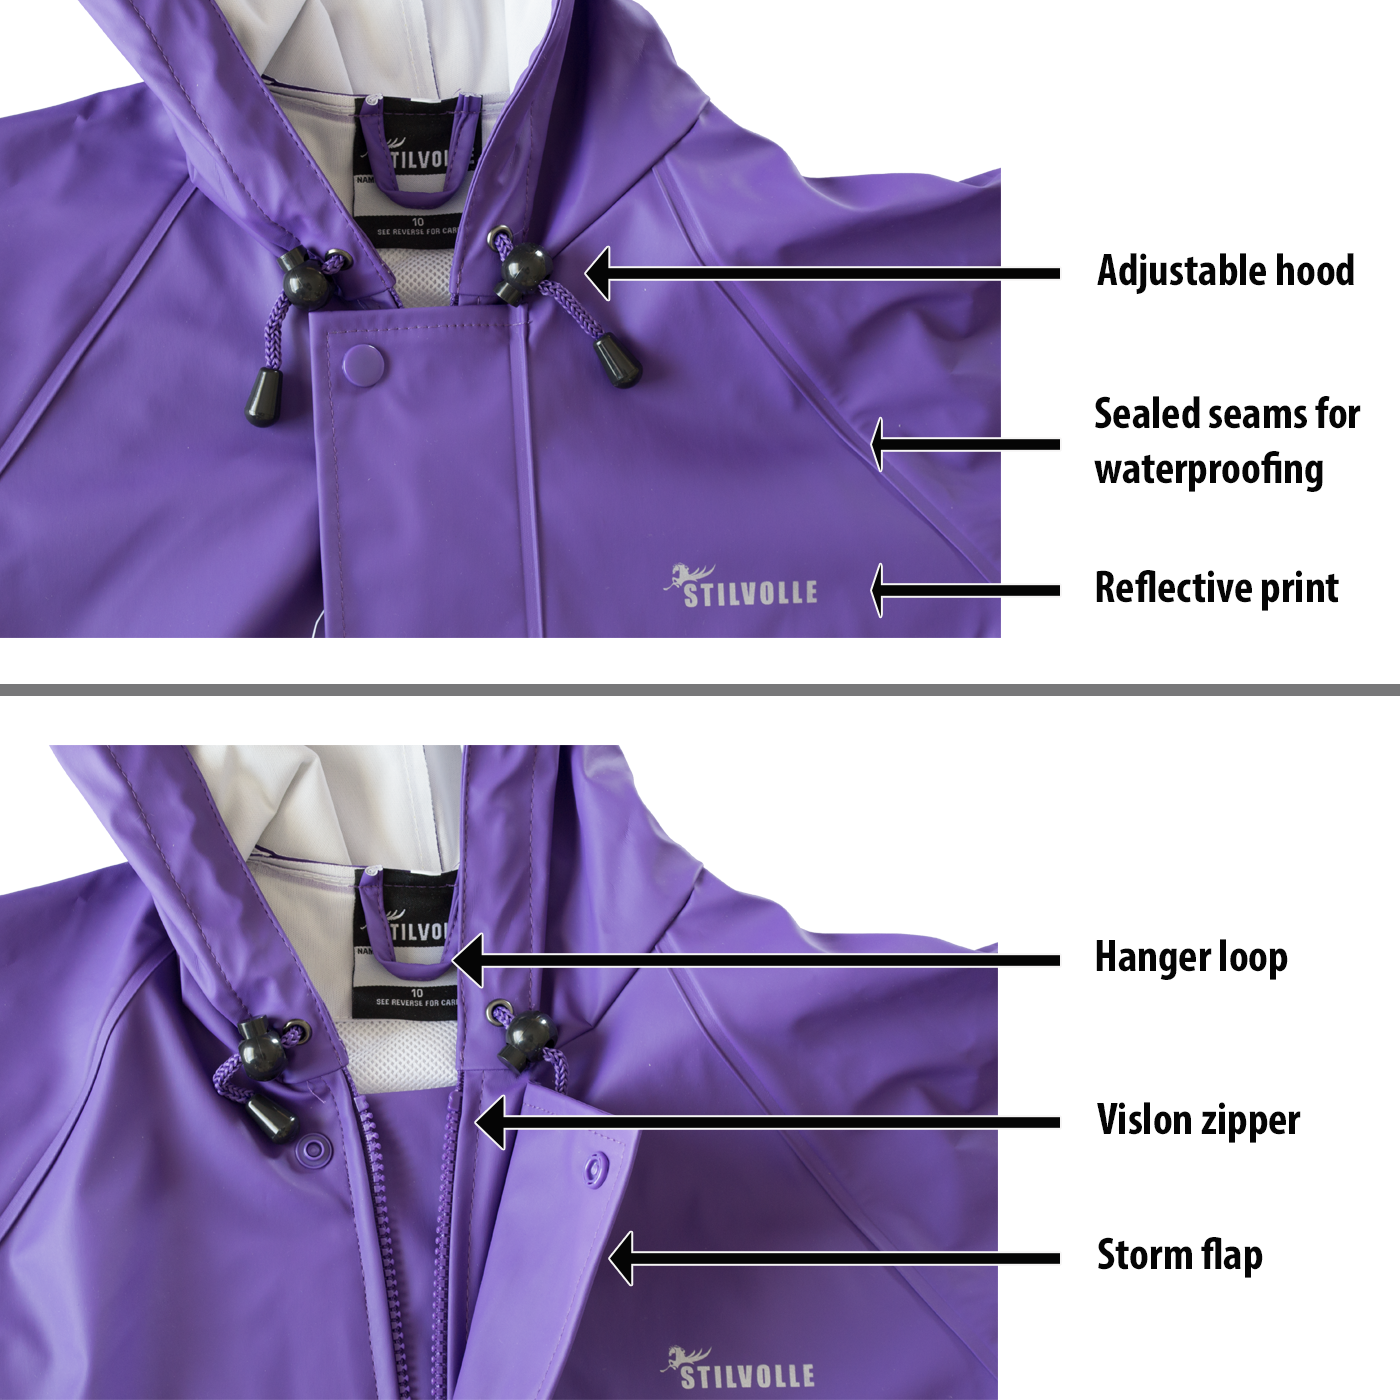 Stilvolle Kids Raincoat 100% Waterproof Hooded Purple Features